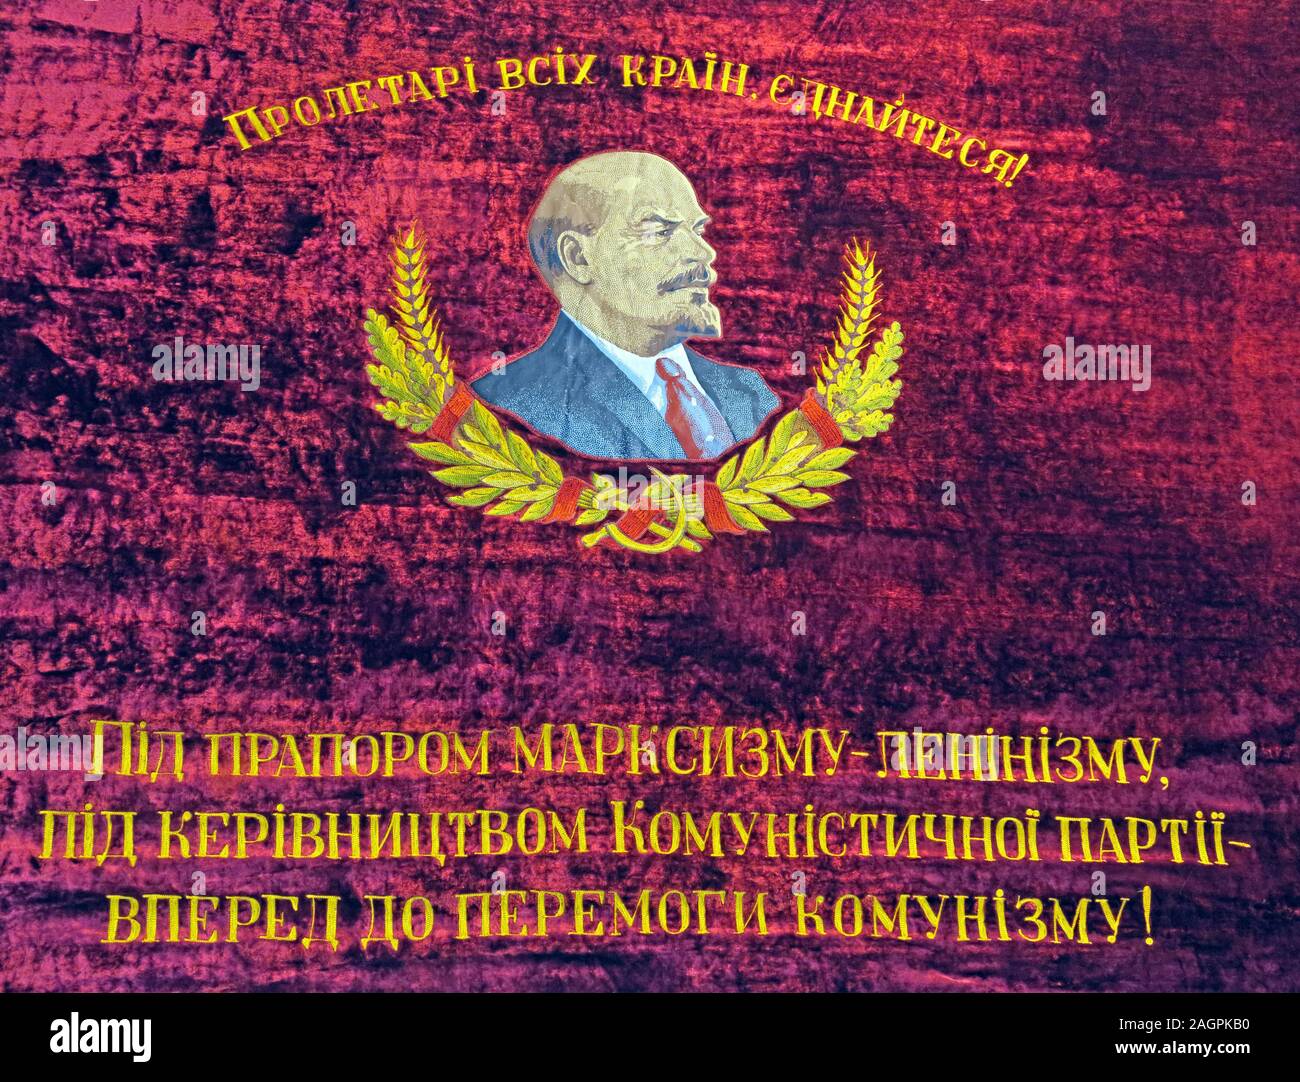 Vladimir Lénine, transférer le monde au communisme, en avant au communisme, résonne dans l'invasion russe de l'Ukraine Poutine février 2022 Banque D'Images